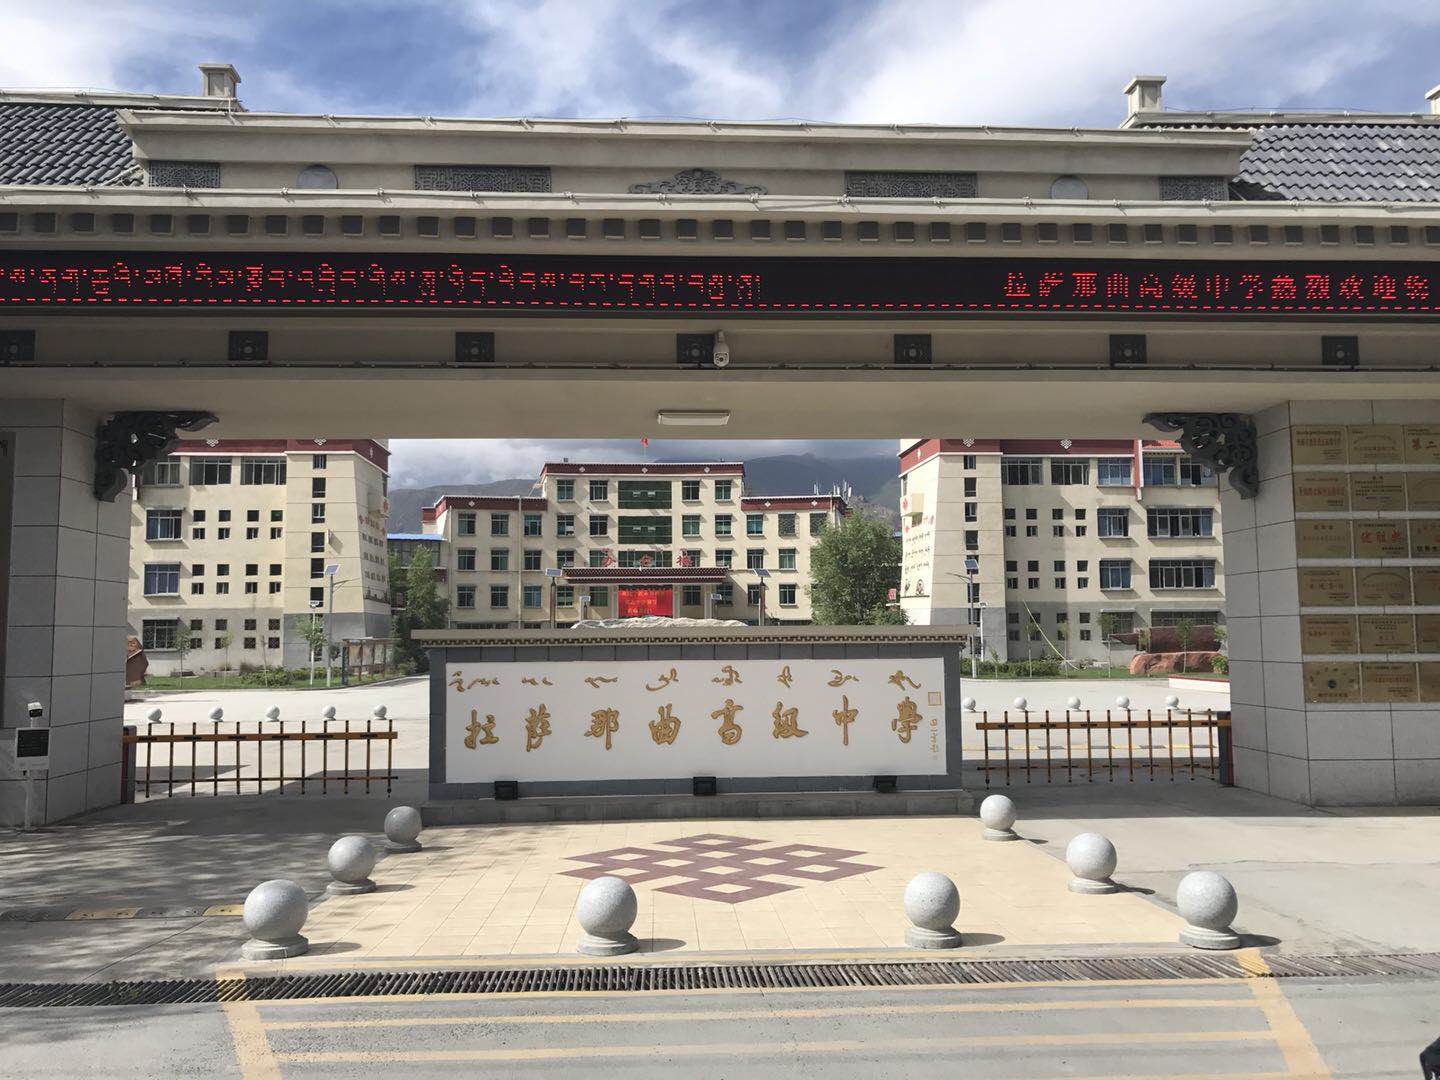 交流学习促提升 郑州市第106高级中学携手洛阳十一高同行共发展 - 郑州教育信息网